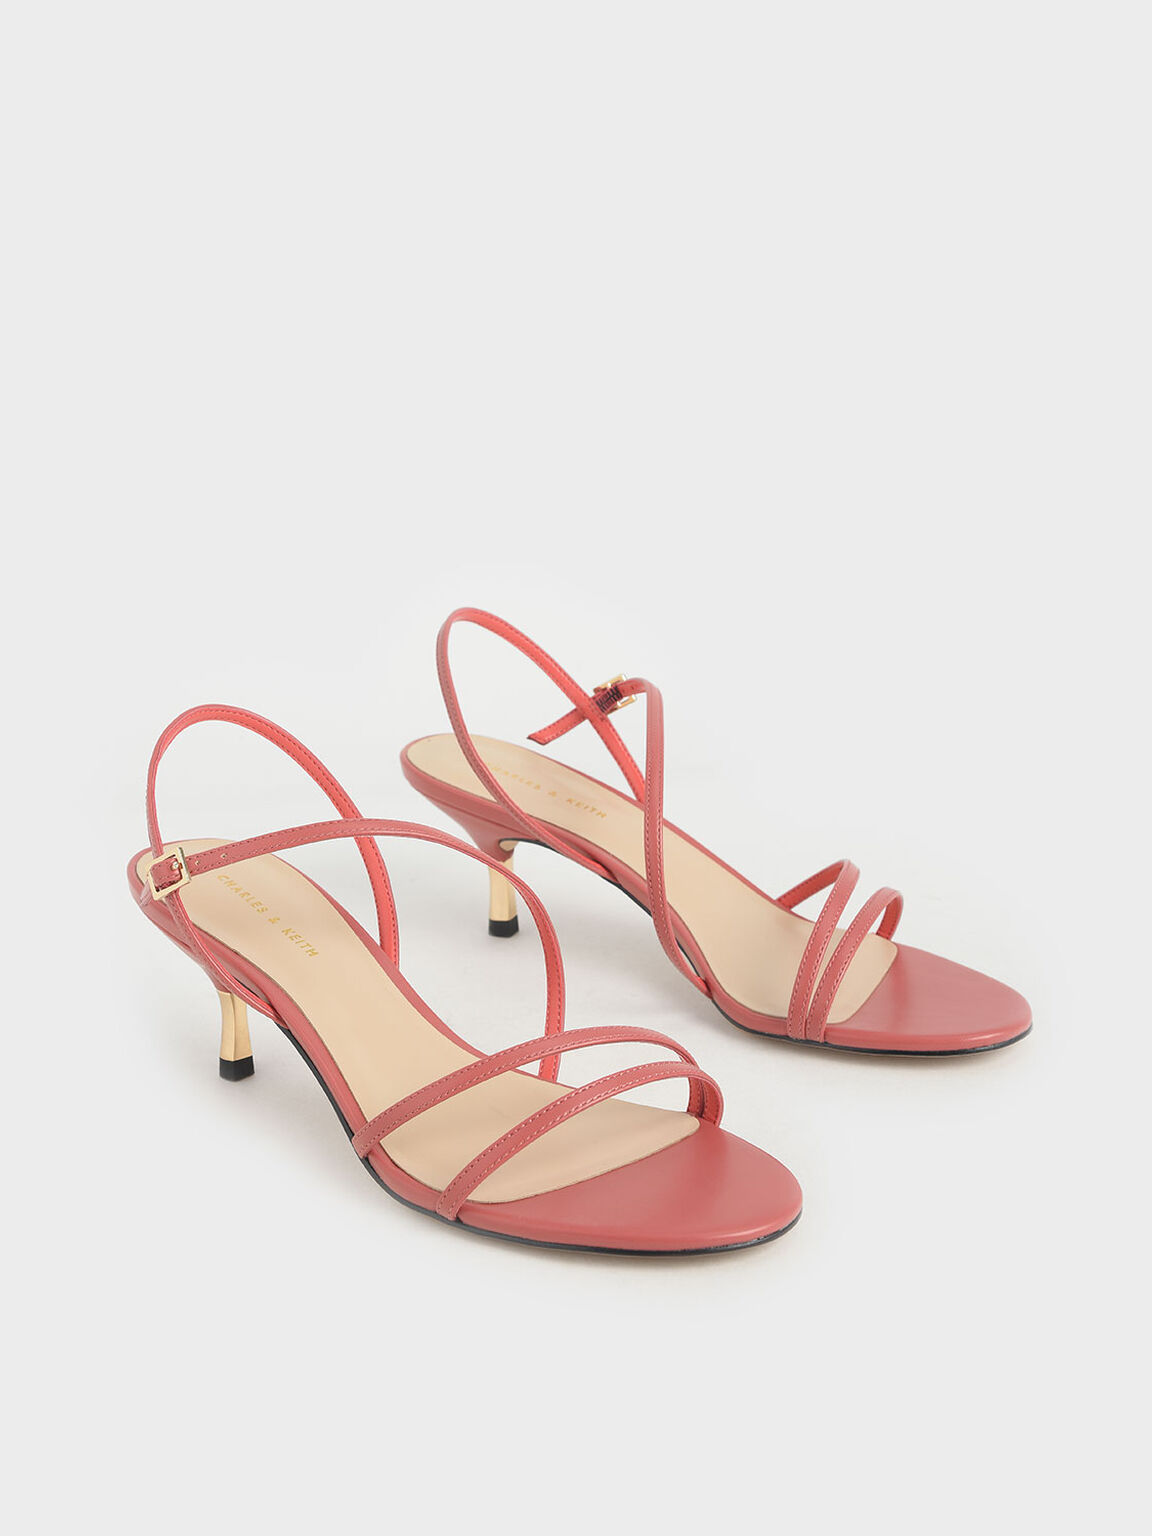 Strappy Metallic Heel Sandals, Coral Pink, hi-res